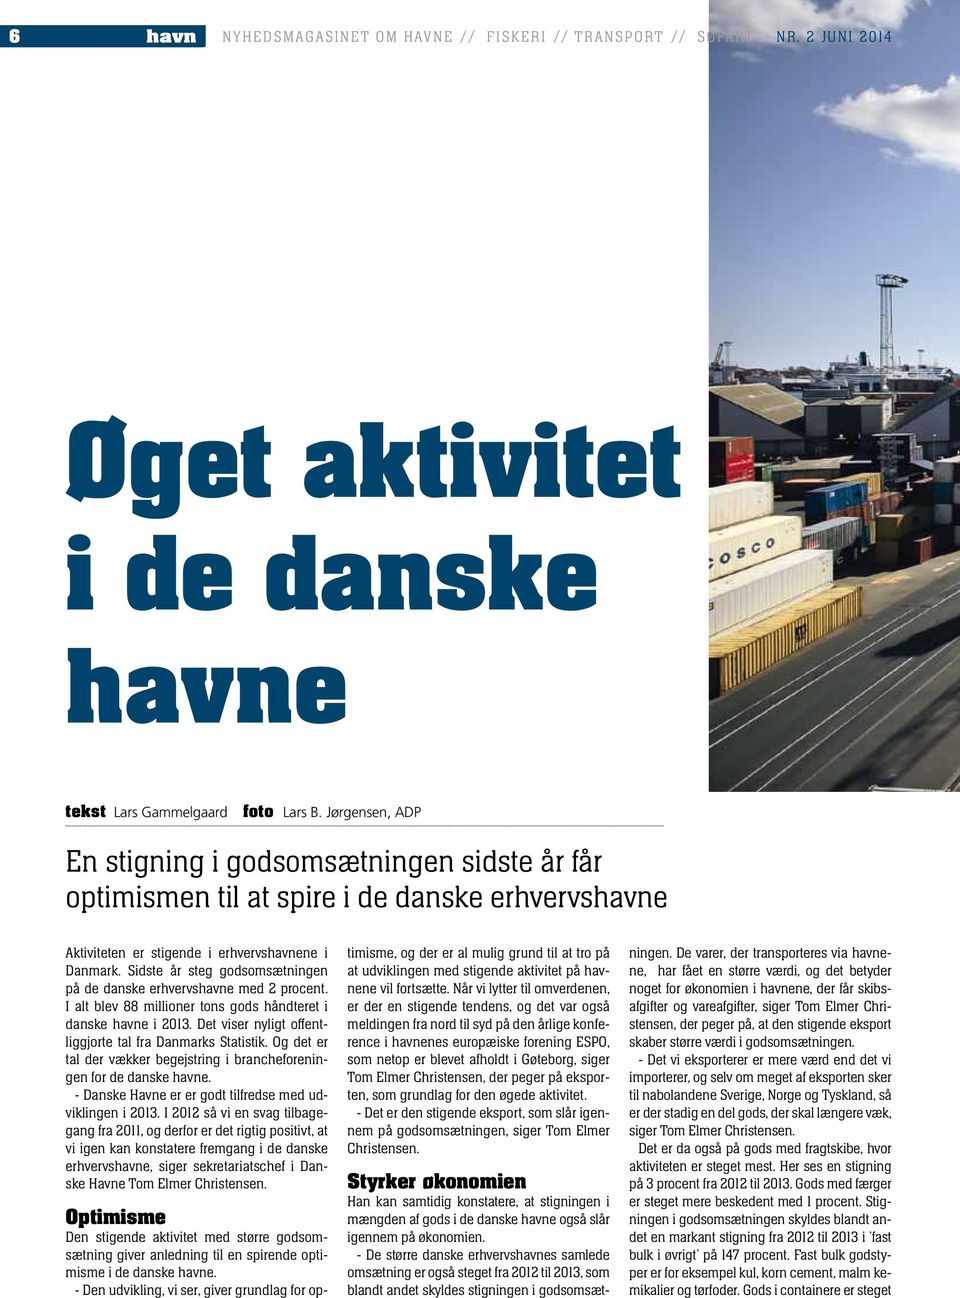 Sidste år steg godsomsætningen på de danske erhvervshavne med 2 procent. I alt blev 88 millioner tons gods håndteret i danske havne i 2013. Det viser nyligt offentliggjorte tal fra Danmarks Statistik.